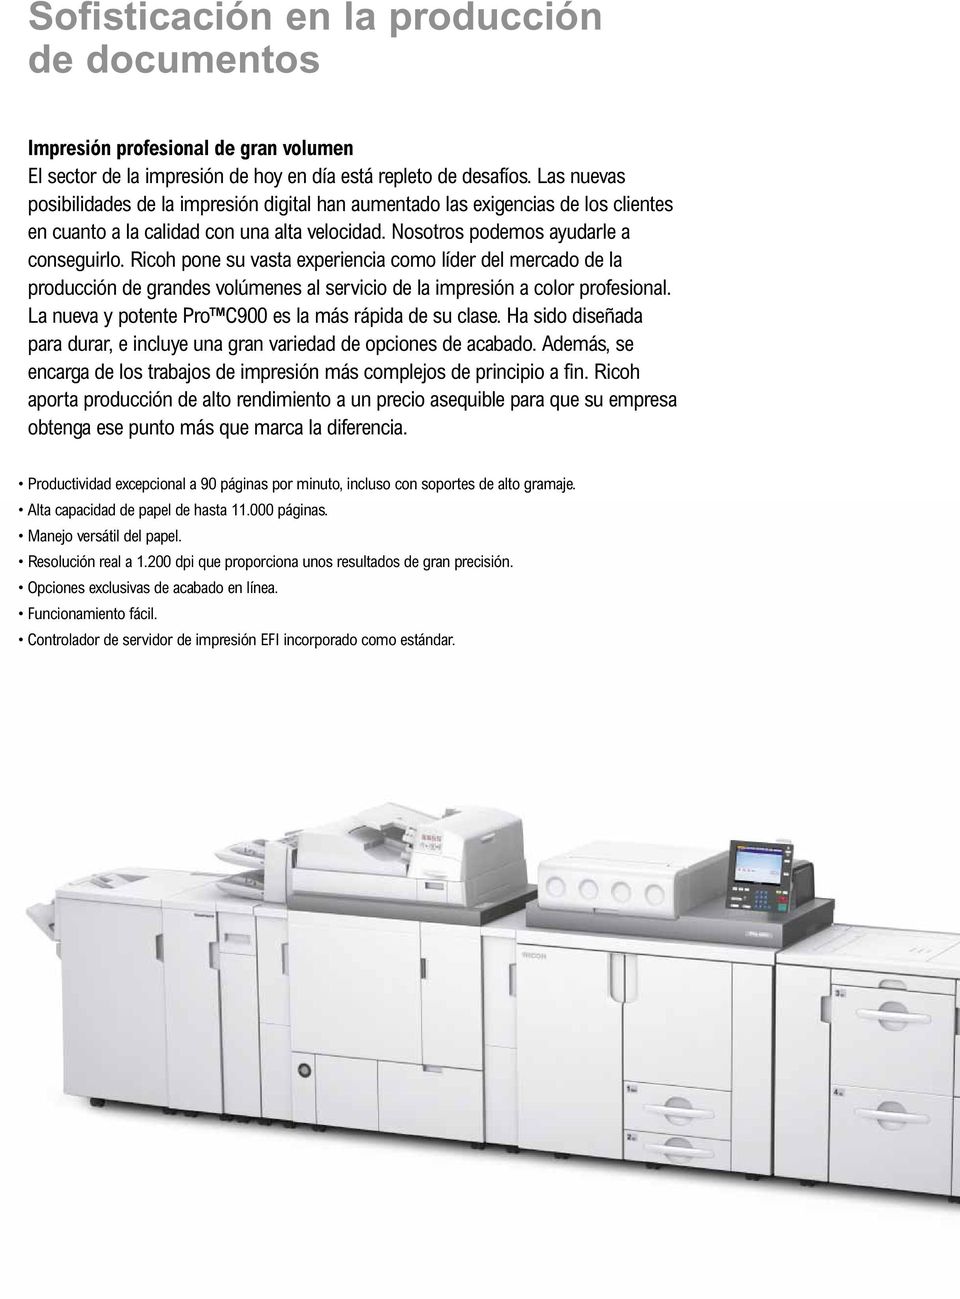 Ricoh pone su vasta experiencia como líder del mercado de la producción de grandes volúmenes al servicio de la impresión a color profesional. La nueva y potente Pro C900 es la más rápida de su clase.